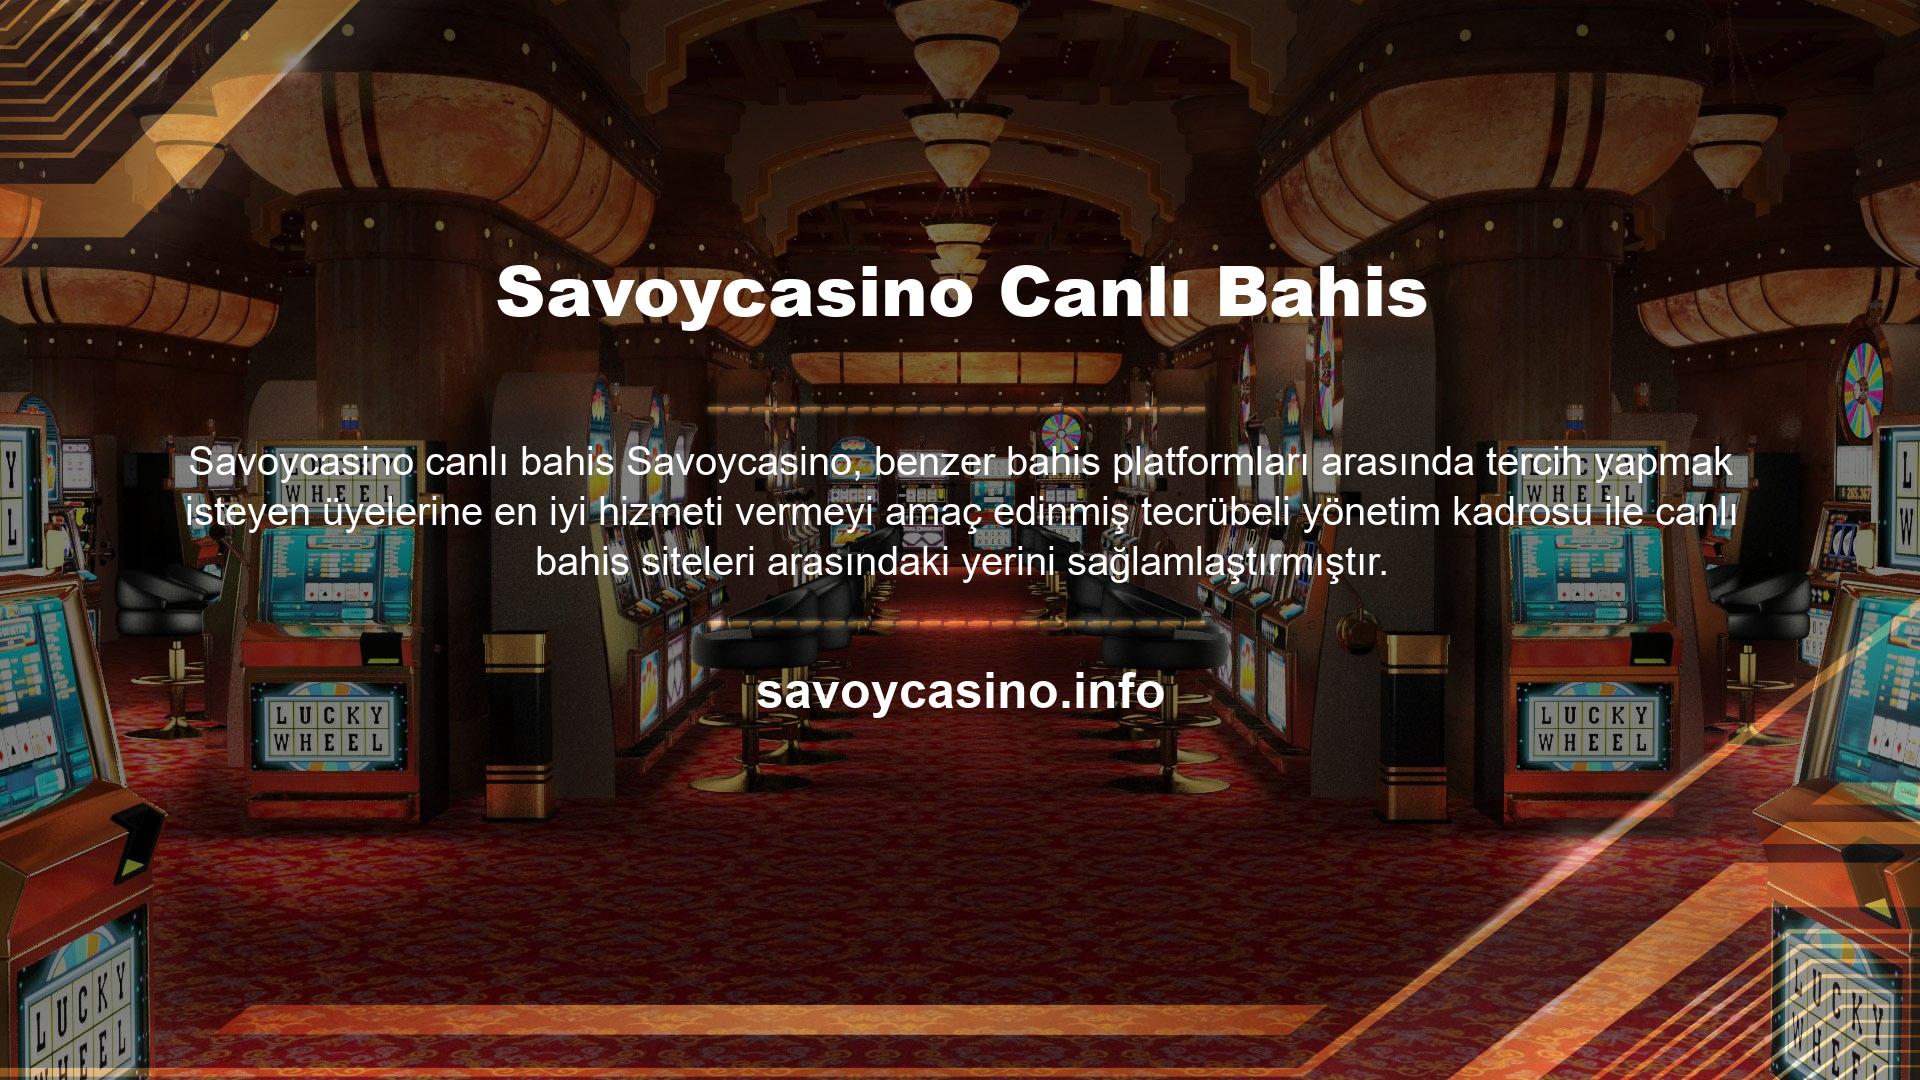 Savoycasino 50'den fazla oyun türü arasında bahis oynayabilir ve ayda 40